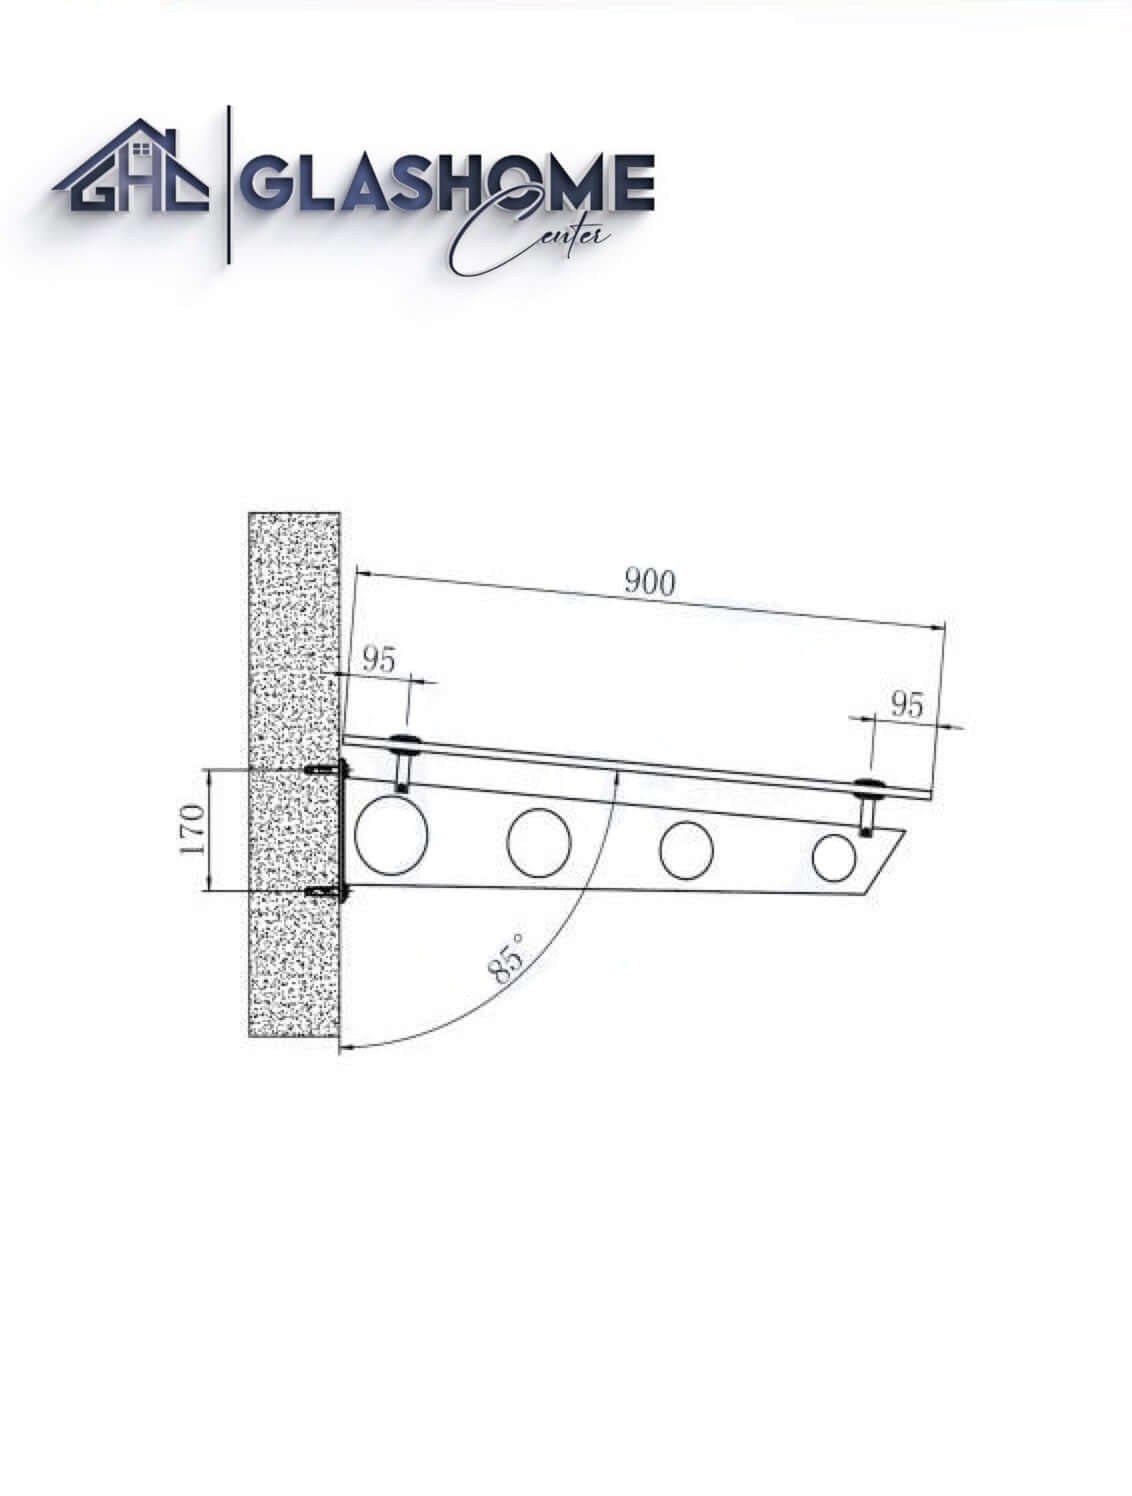 GlasHomeCenter - Glasvordach - Milchglas - 180x90cm - 13,1mm VSG - incl. 2 Edelstahlhalterungen variante "Stoccolma"